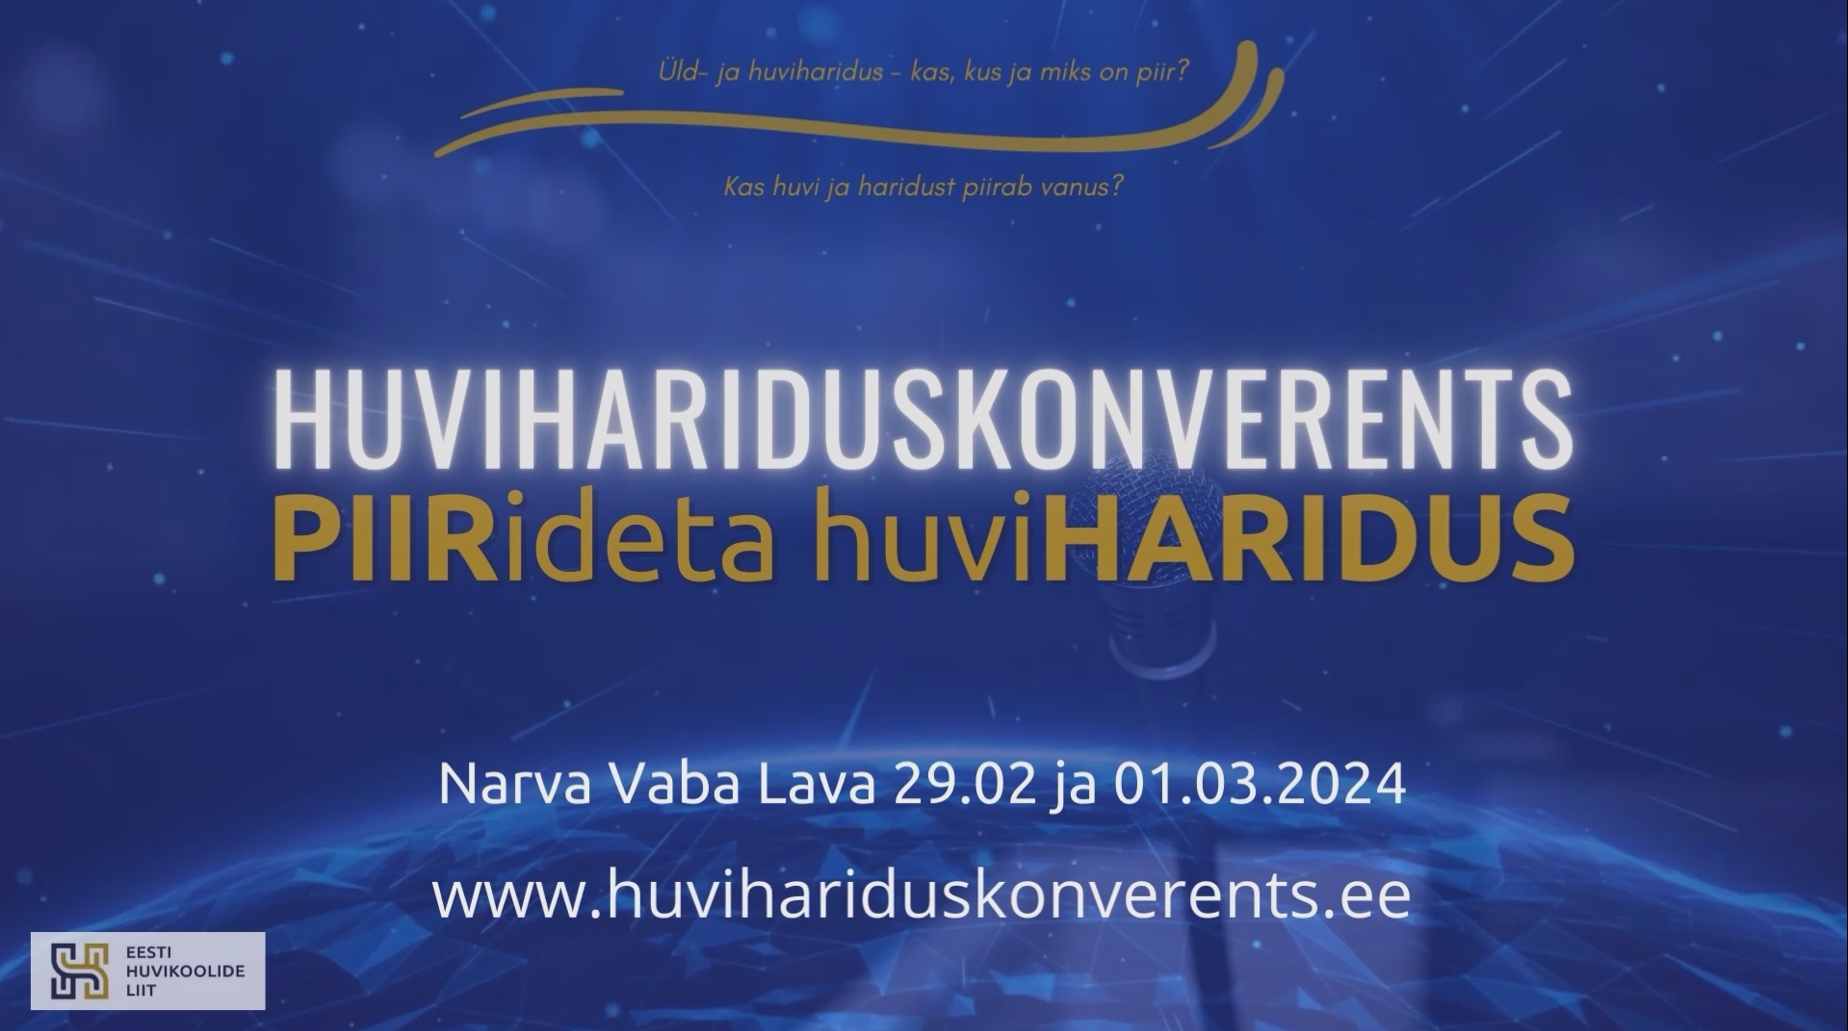 Eesti Huvikoolide Liit korraldas 29.02 – 01.03.2024 Narvas huvihariduskonverentsi PIIRideta huviHARIDUS. Valminud on konverentsi esinemiste videod.  Videod on v